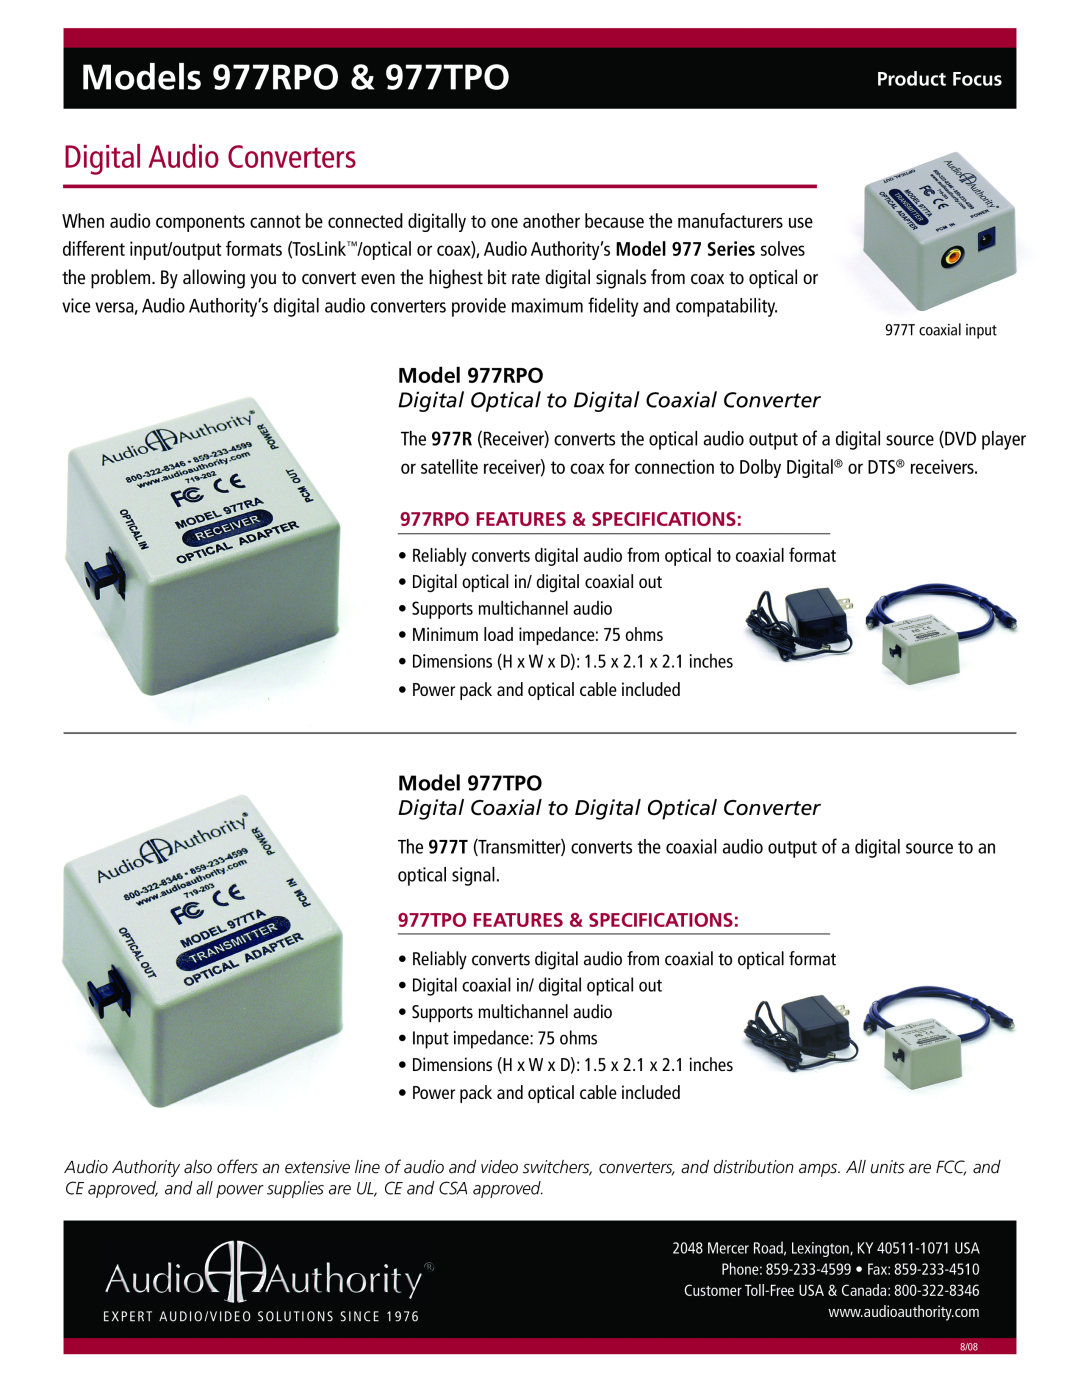 Audio Authority specifications Models 977RPO & 977TPO, Digital Audio Converters, Model 977RPO, Model 977TPO 